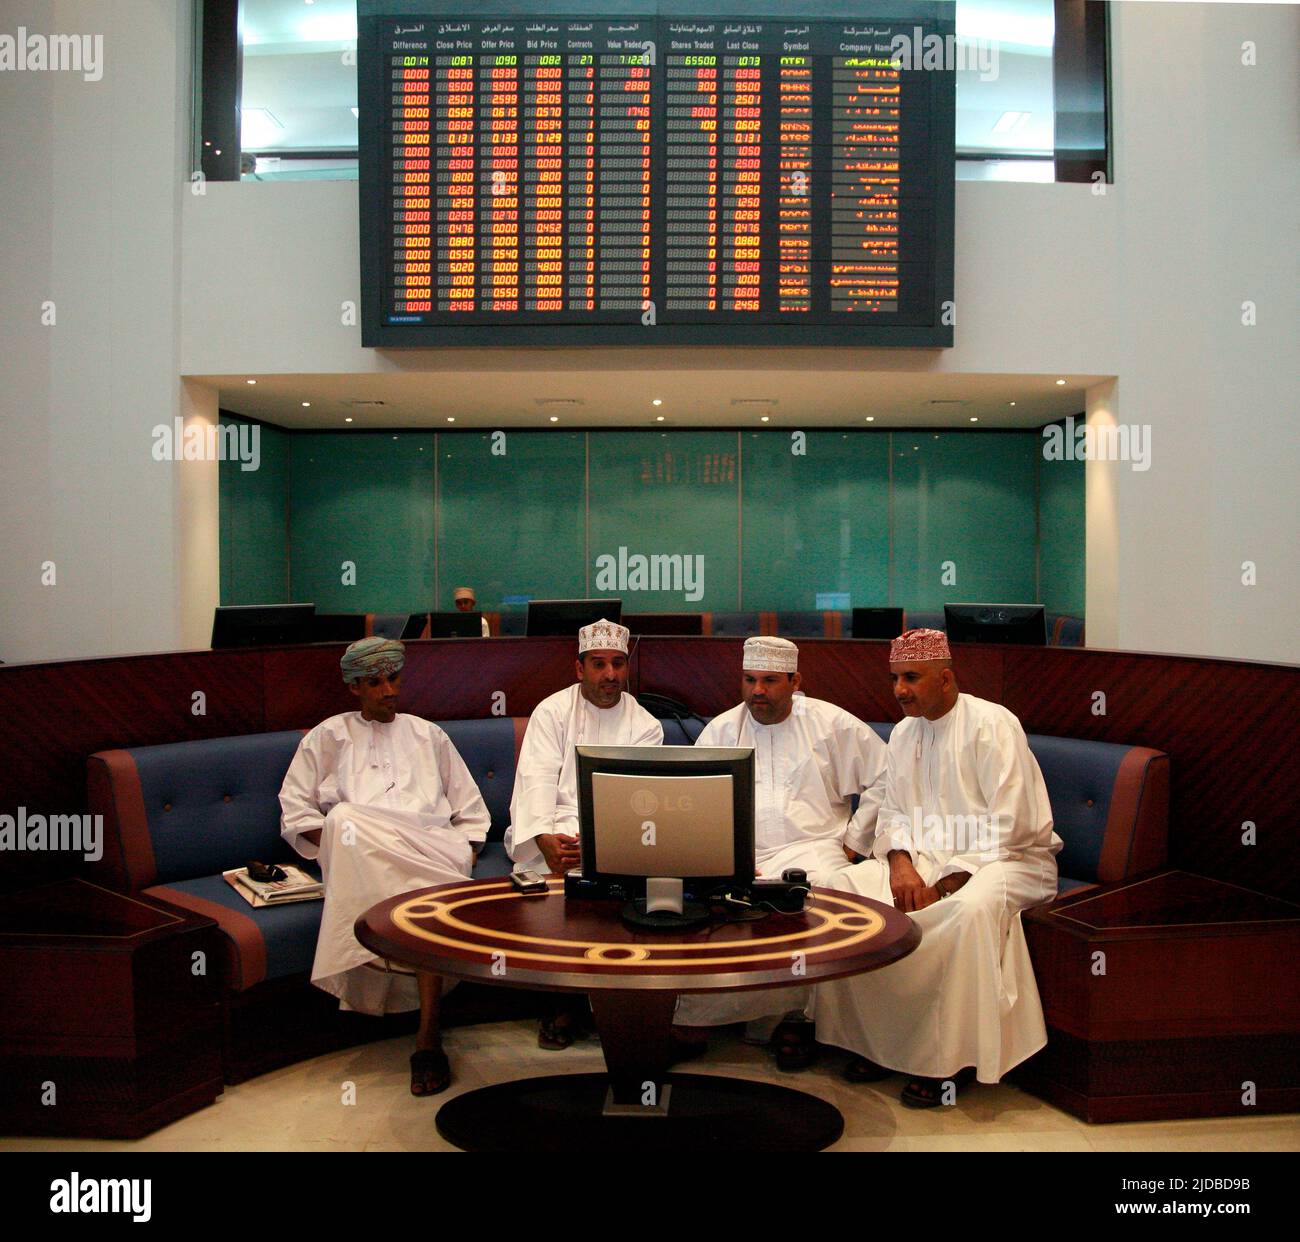 Hombres omaníes que comprueban los precios de las acciones en el mercado de valores de Muscat Foto de stock